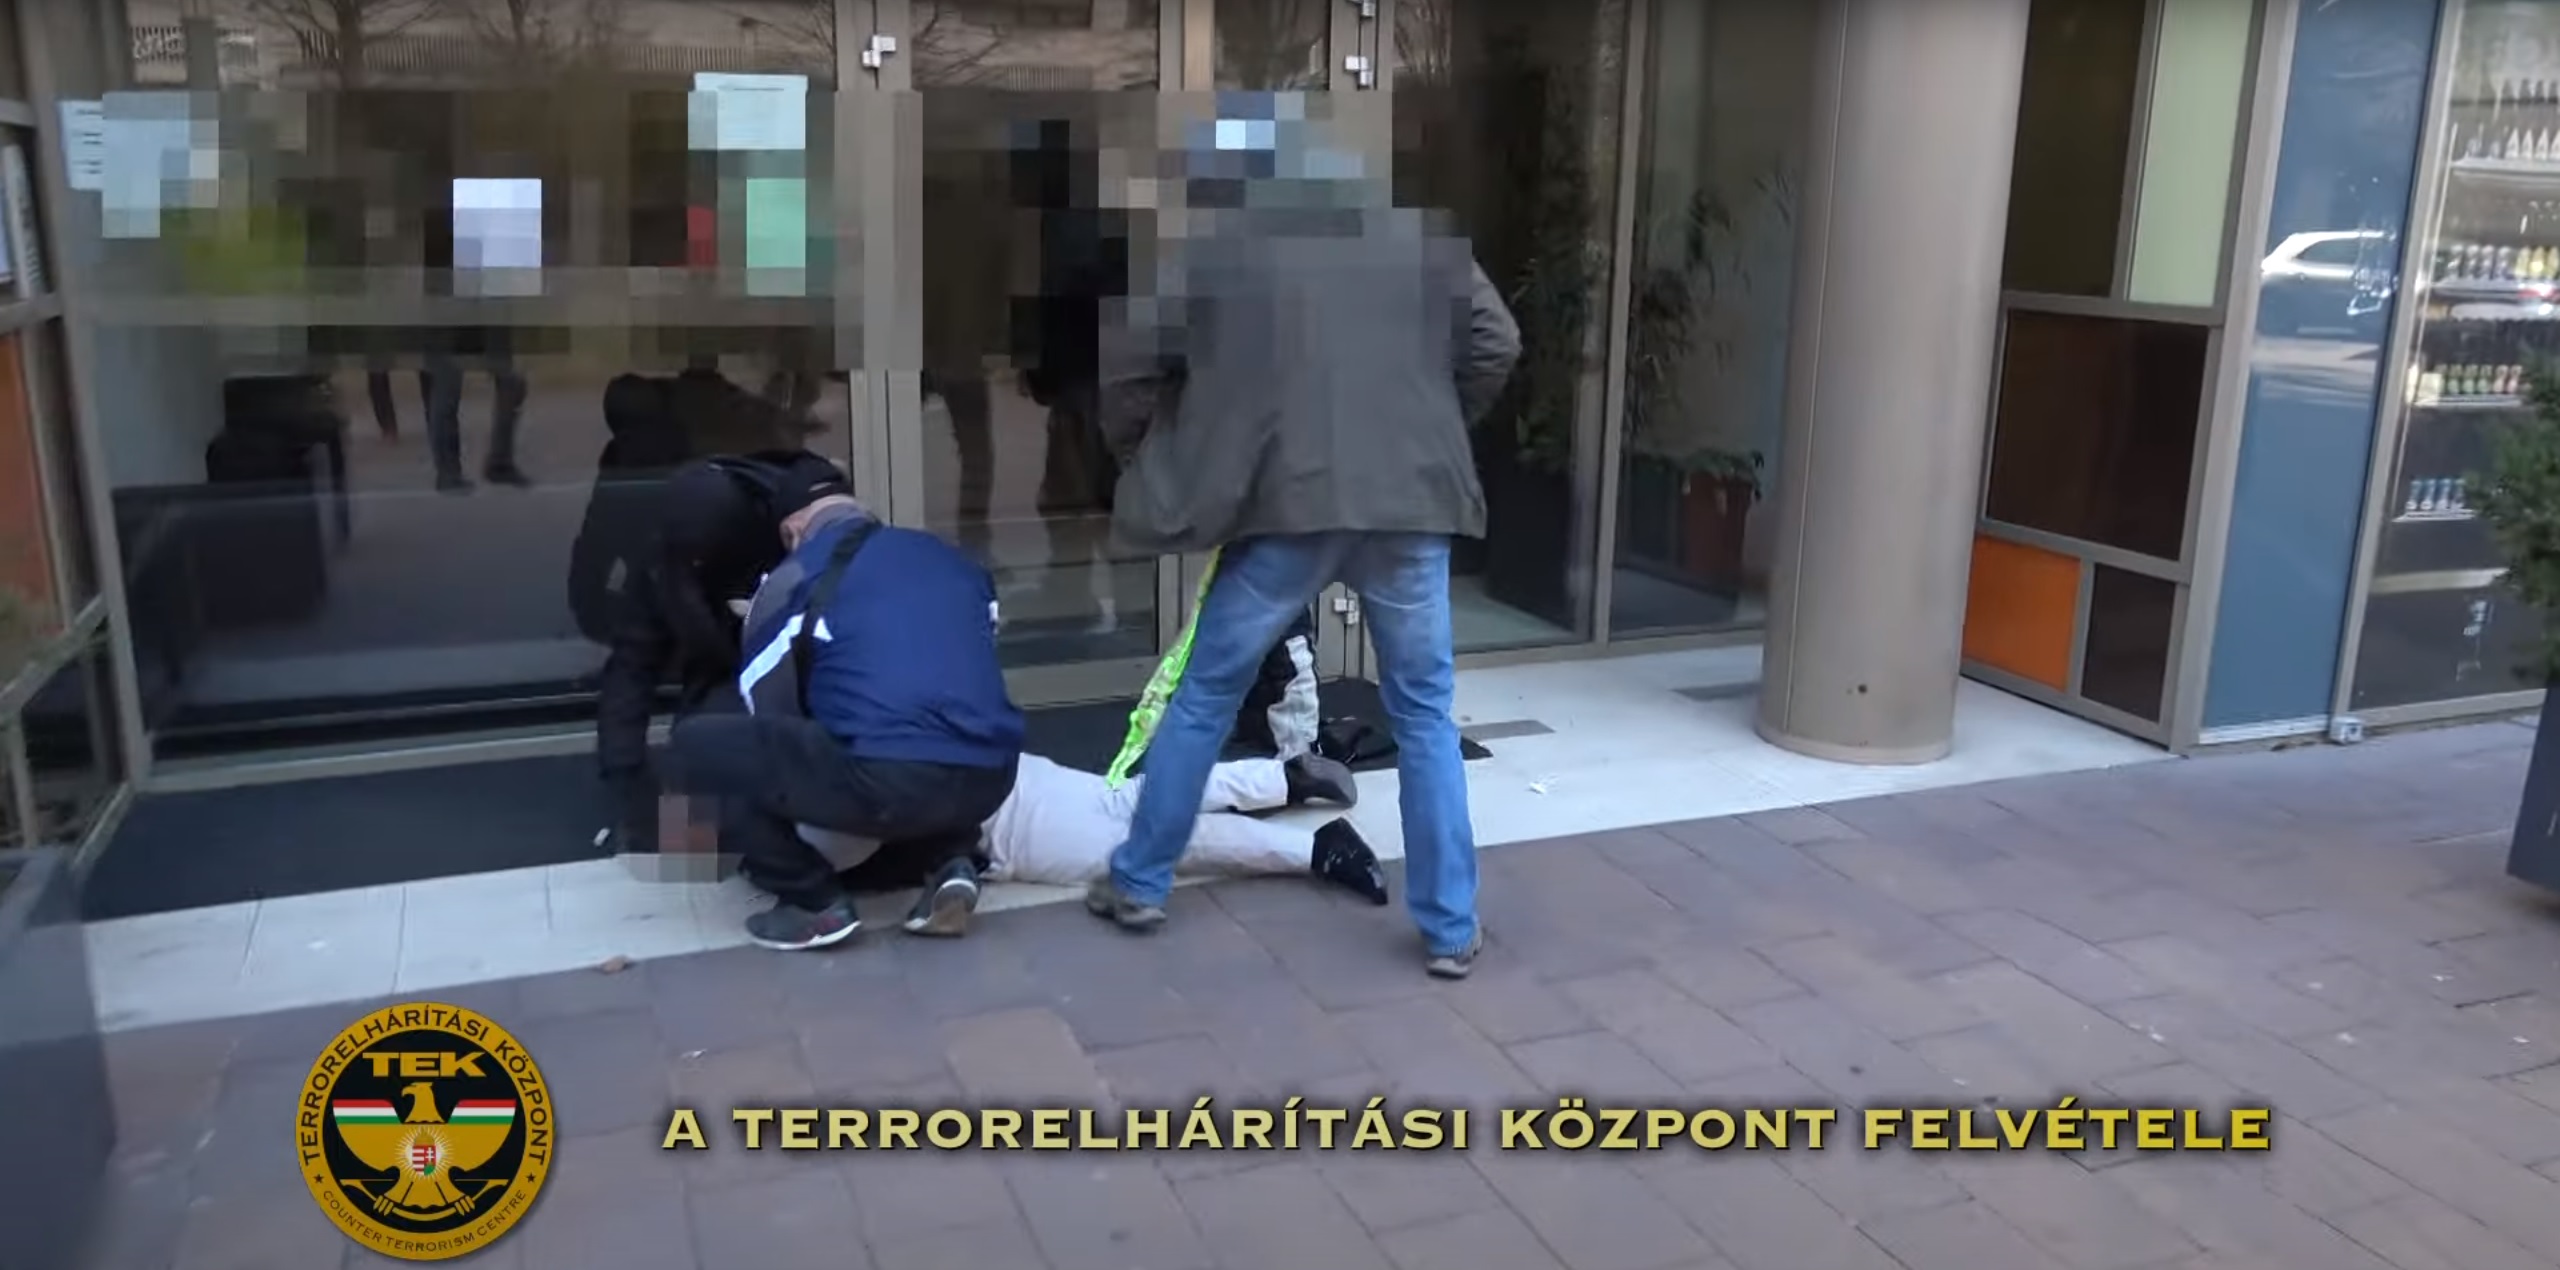 اعتقال رجل بولندي في بودابست بتهمة الاختطاف واحتجاز الرهائن والسطو المسلح